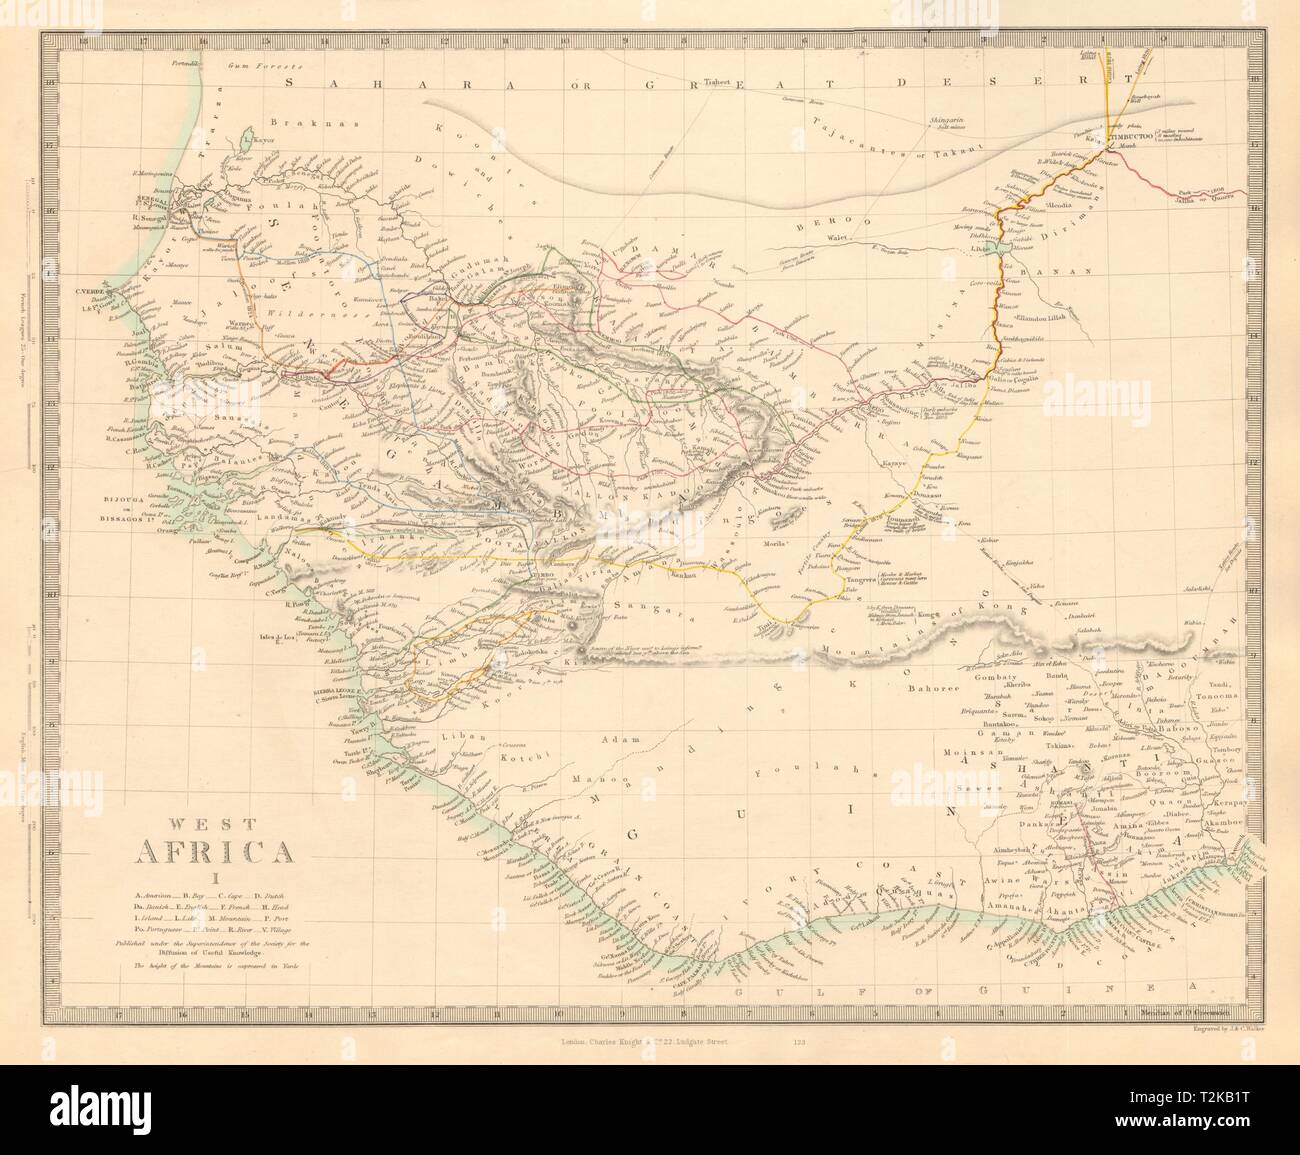 WEST AFRICA I Explorers' routes Senegal Ashanti Ivory Gold Coast. SDUK 1846  map Stock Photo - Alamy